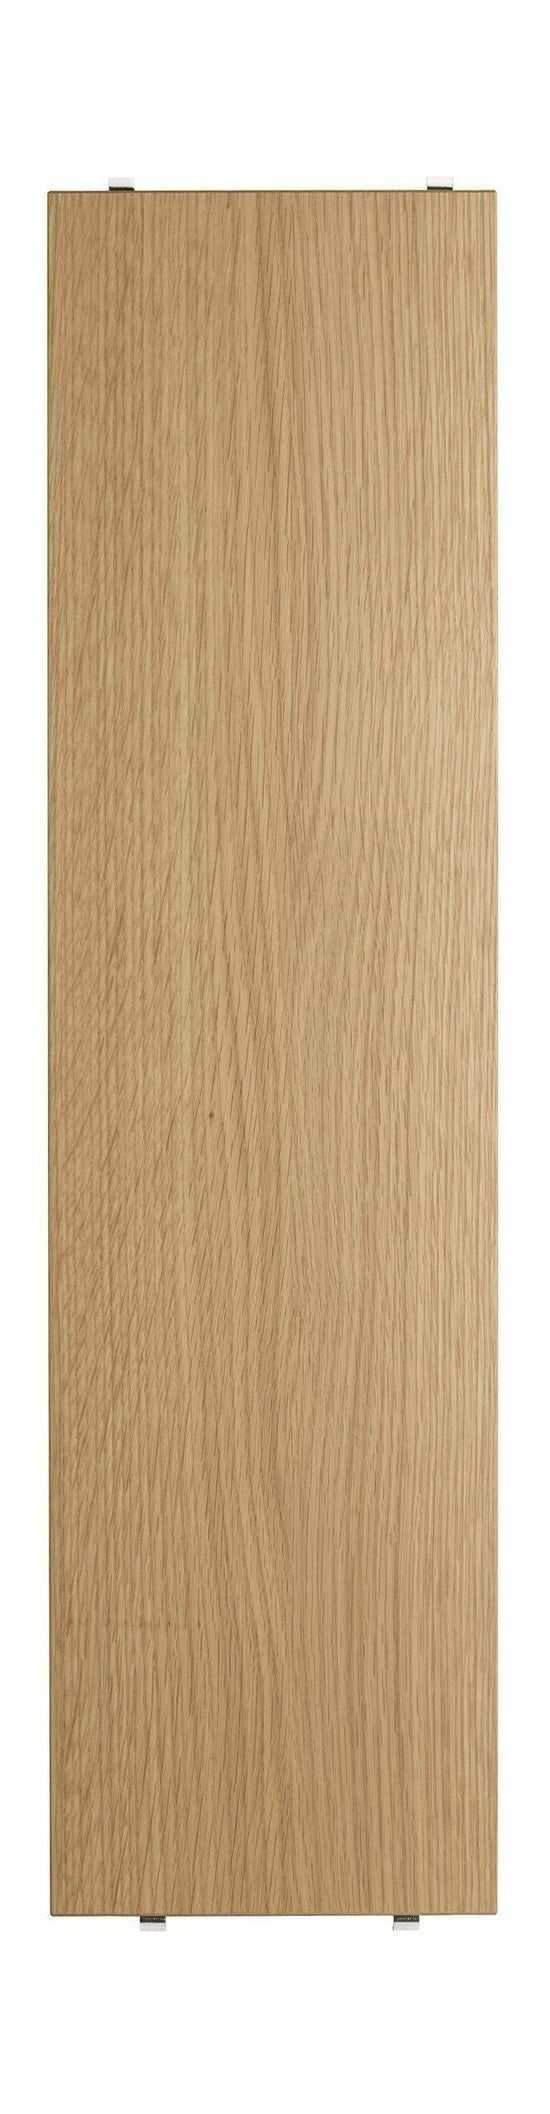 Saitenmöbel -Saitensystemregal aus Holz Eiche 20x78 cm, 3 -Set von 3